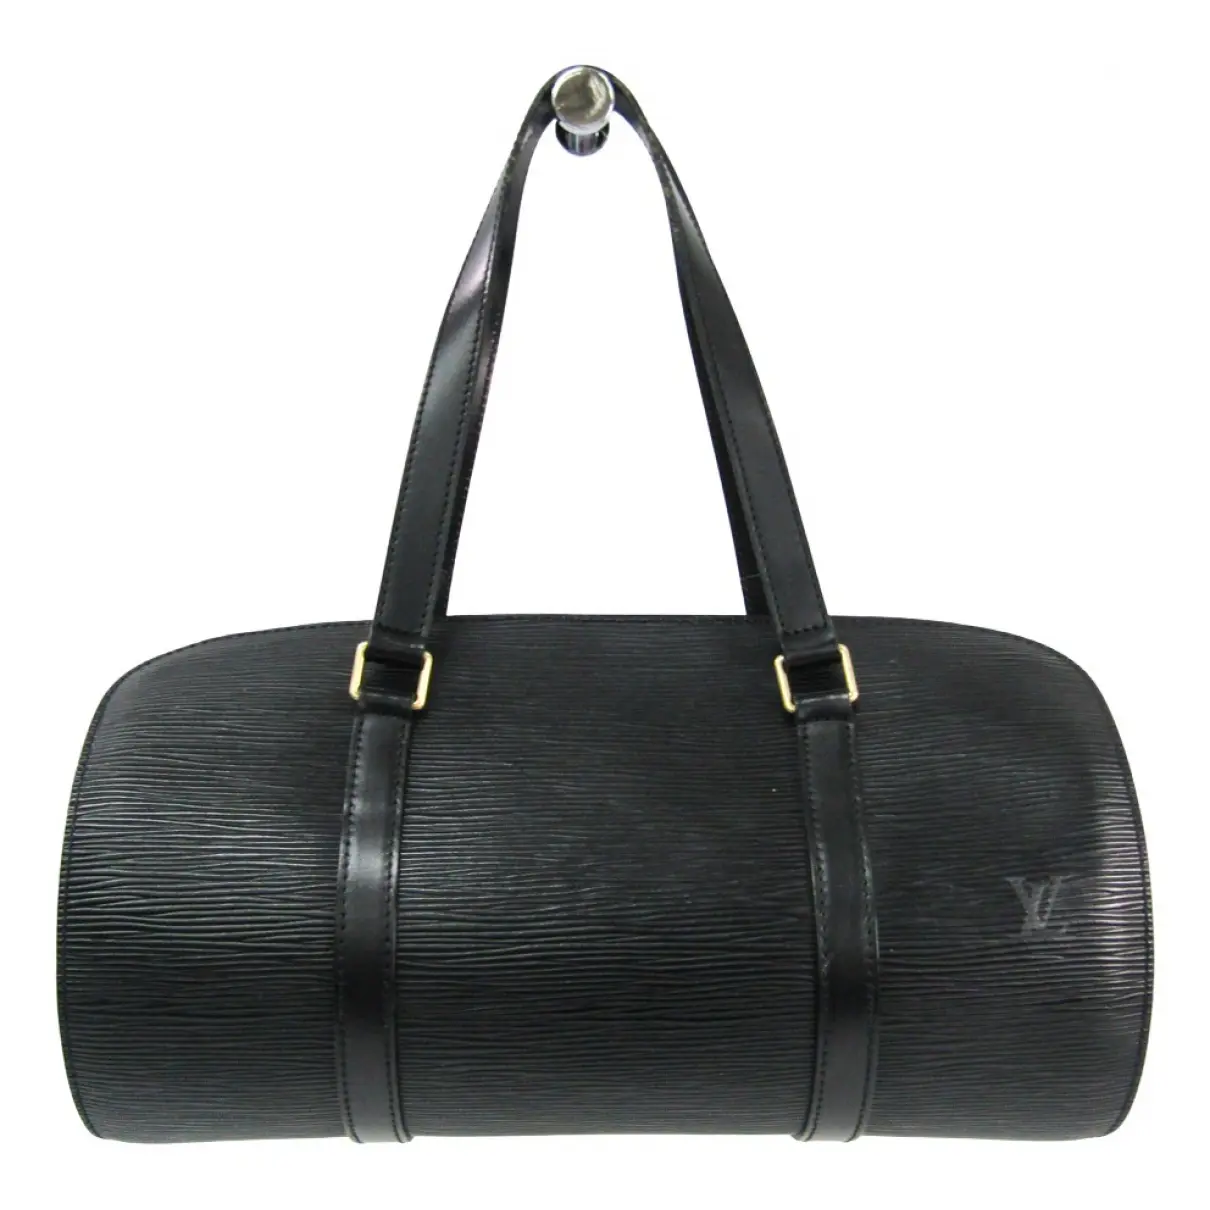 Soufflot leather handbag Louis Vuitton - Vintage